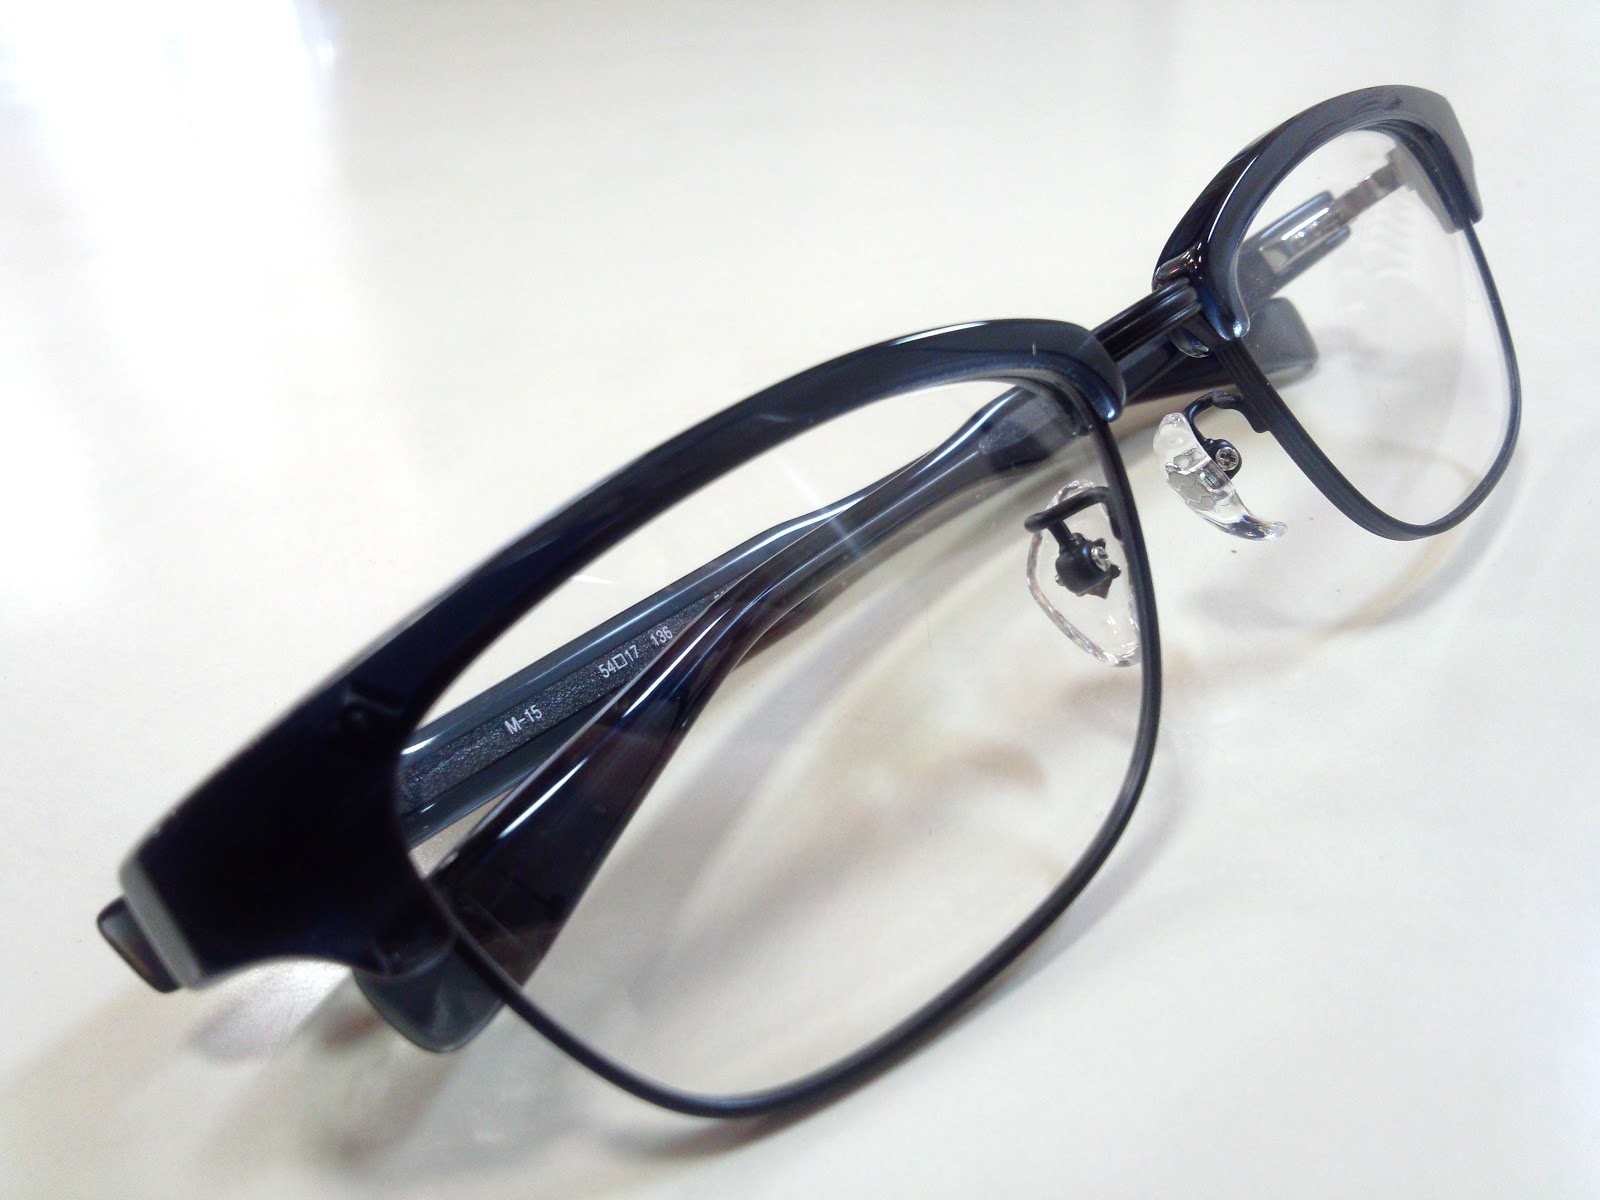 999.9（フォーナインズ）「M-15」再入荷 | 愛知県岡崎市で1882年創業の眼鏡専門店 メガネの吉川屋ブログ